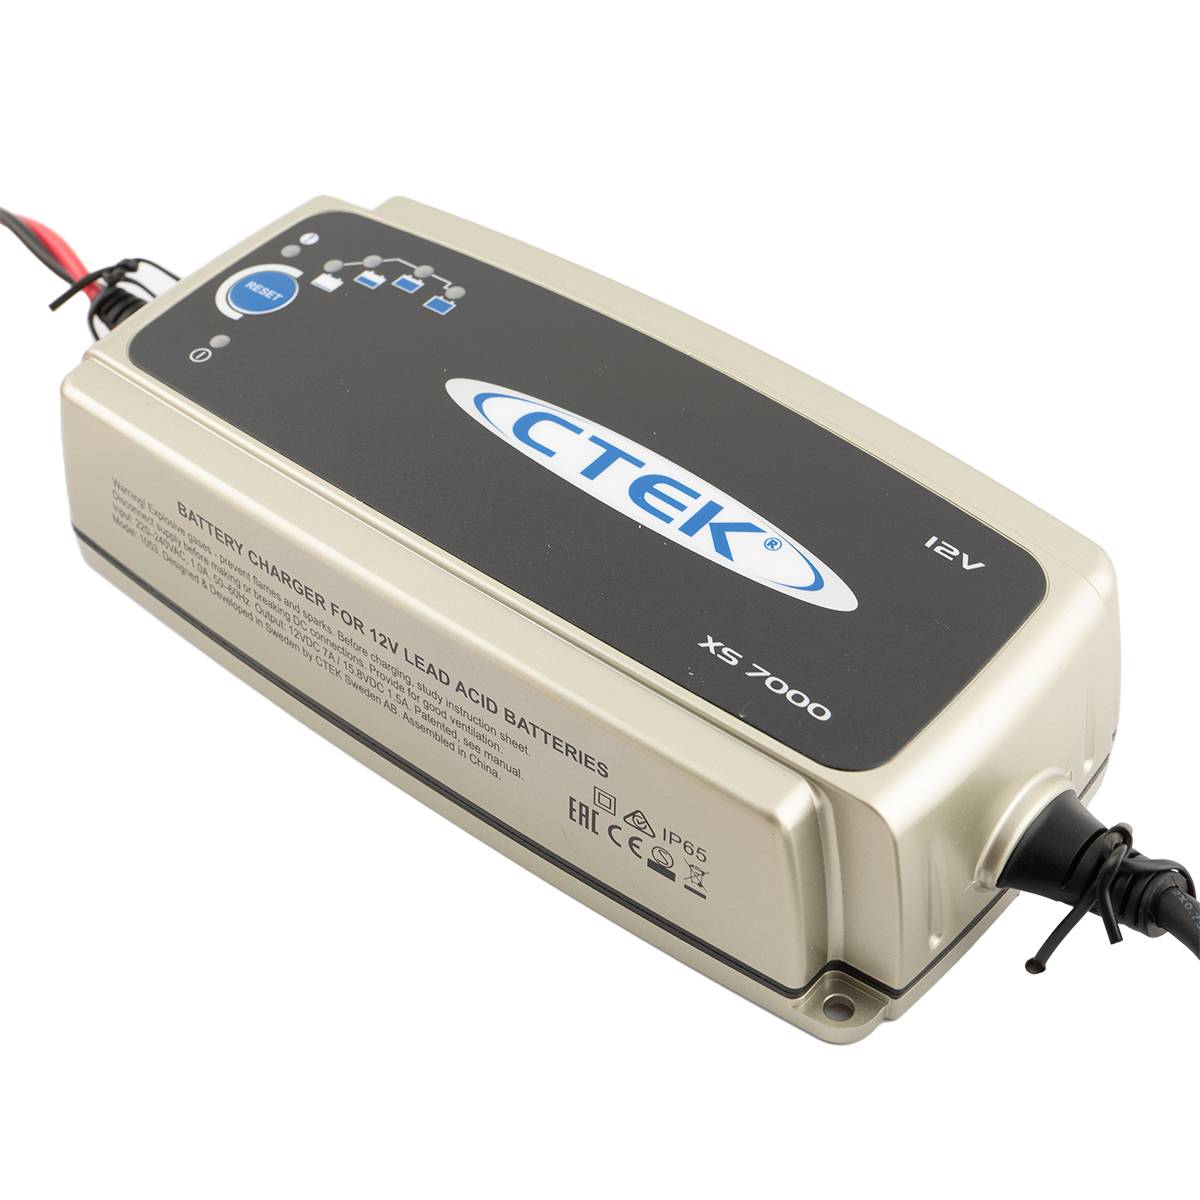 CTEK XS 7000 EU Batterie Ladegerät 12V 7A für Blei-Säure Batterien